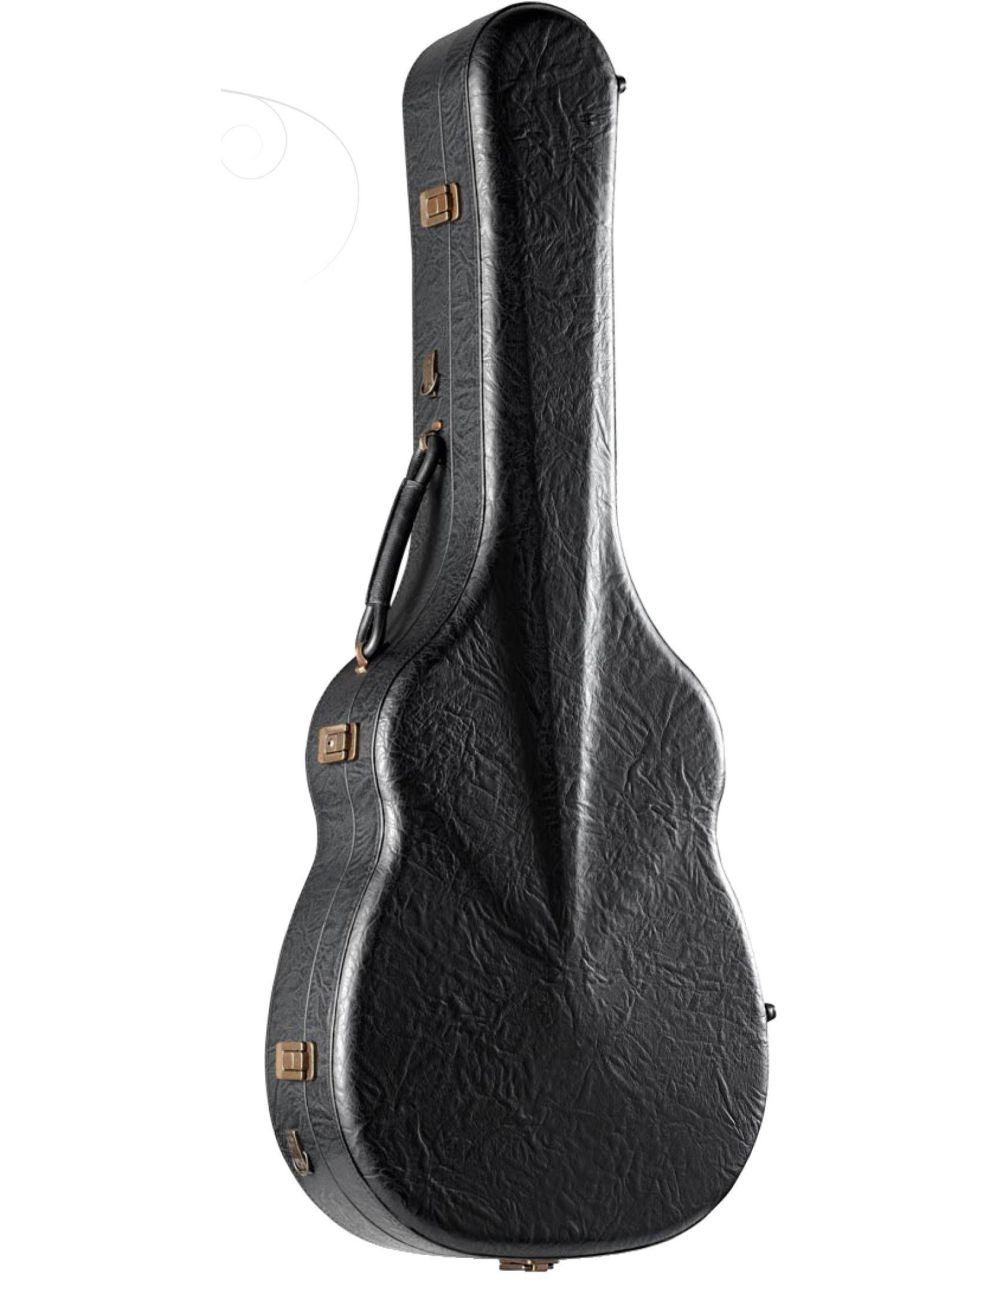 Alhambra SI591-2A Acoustic guitar case / Auditorium 9567 Acoustic guitar